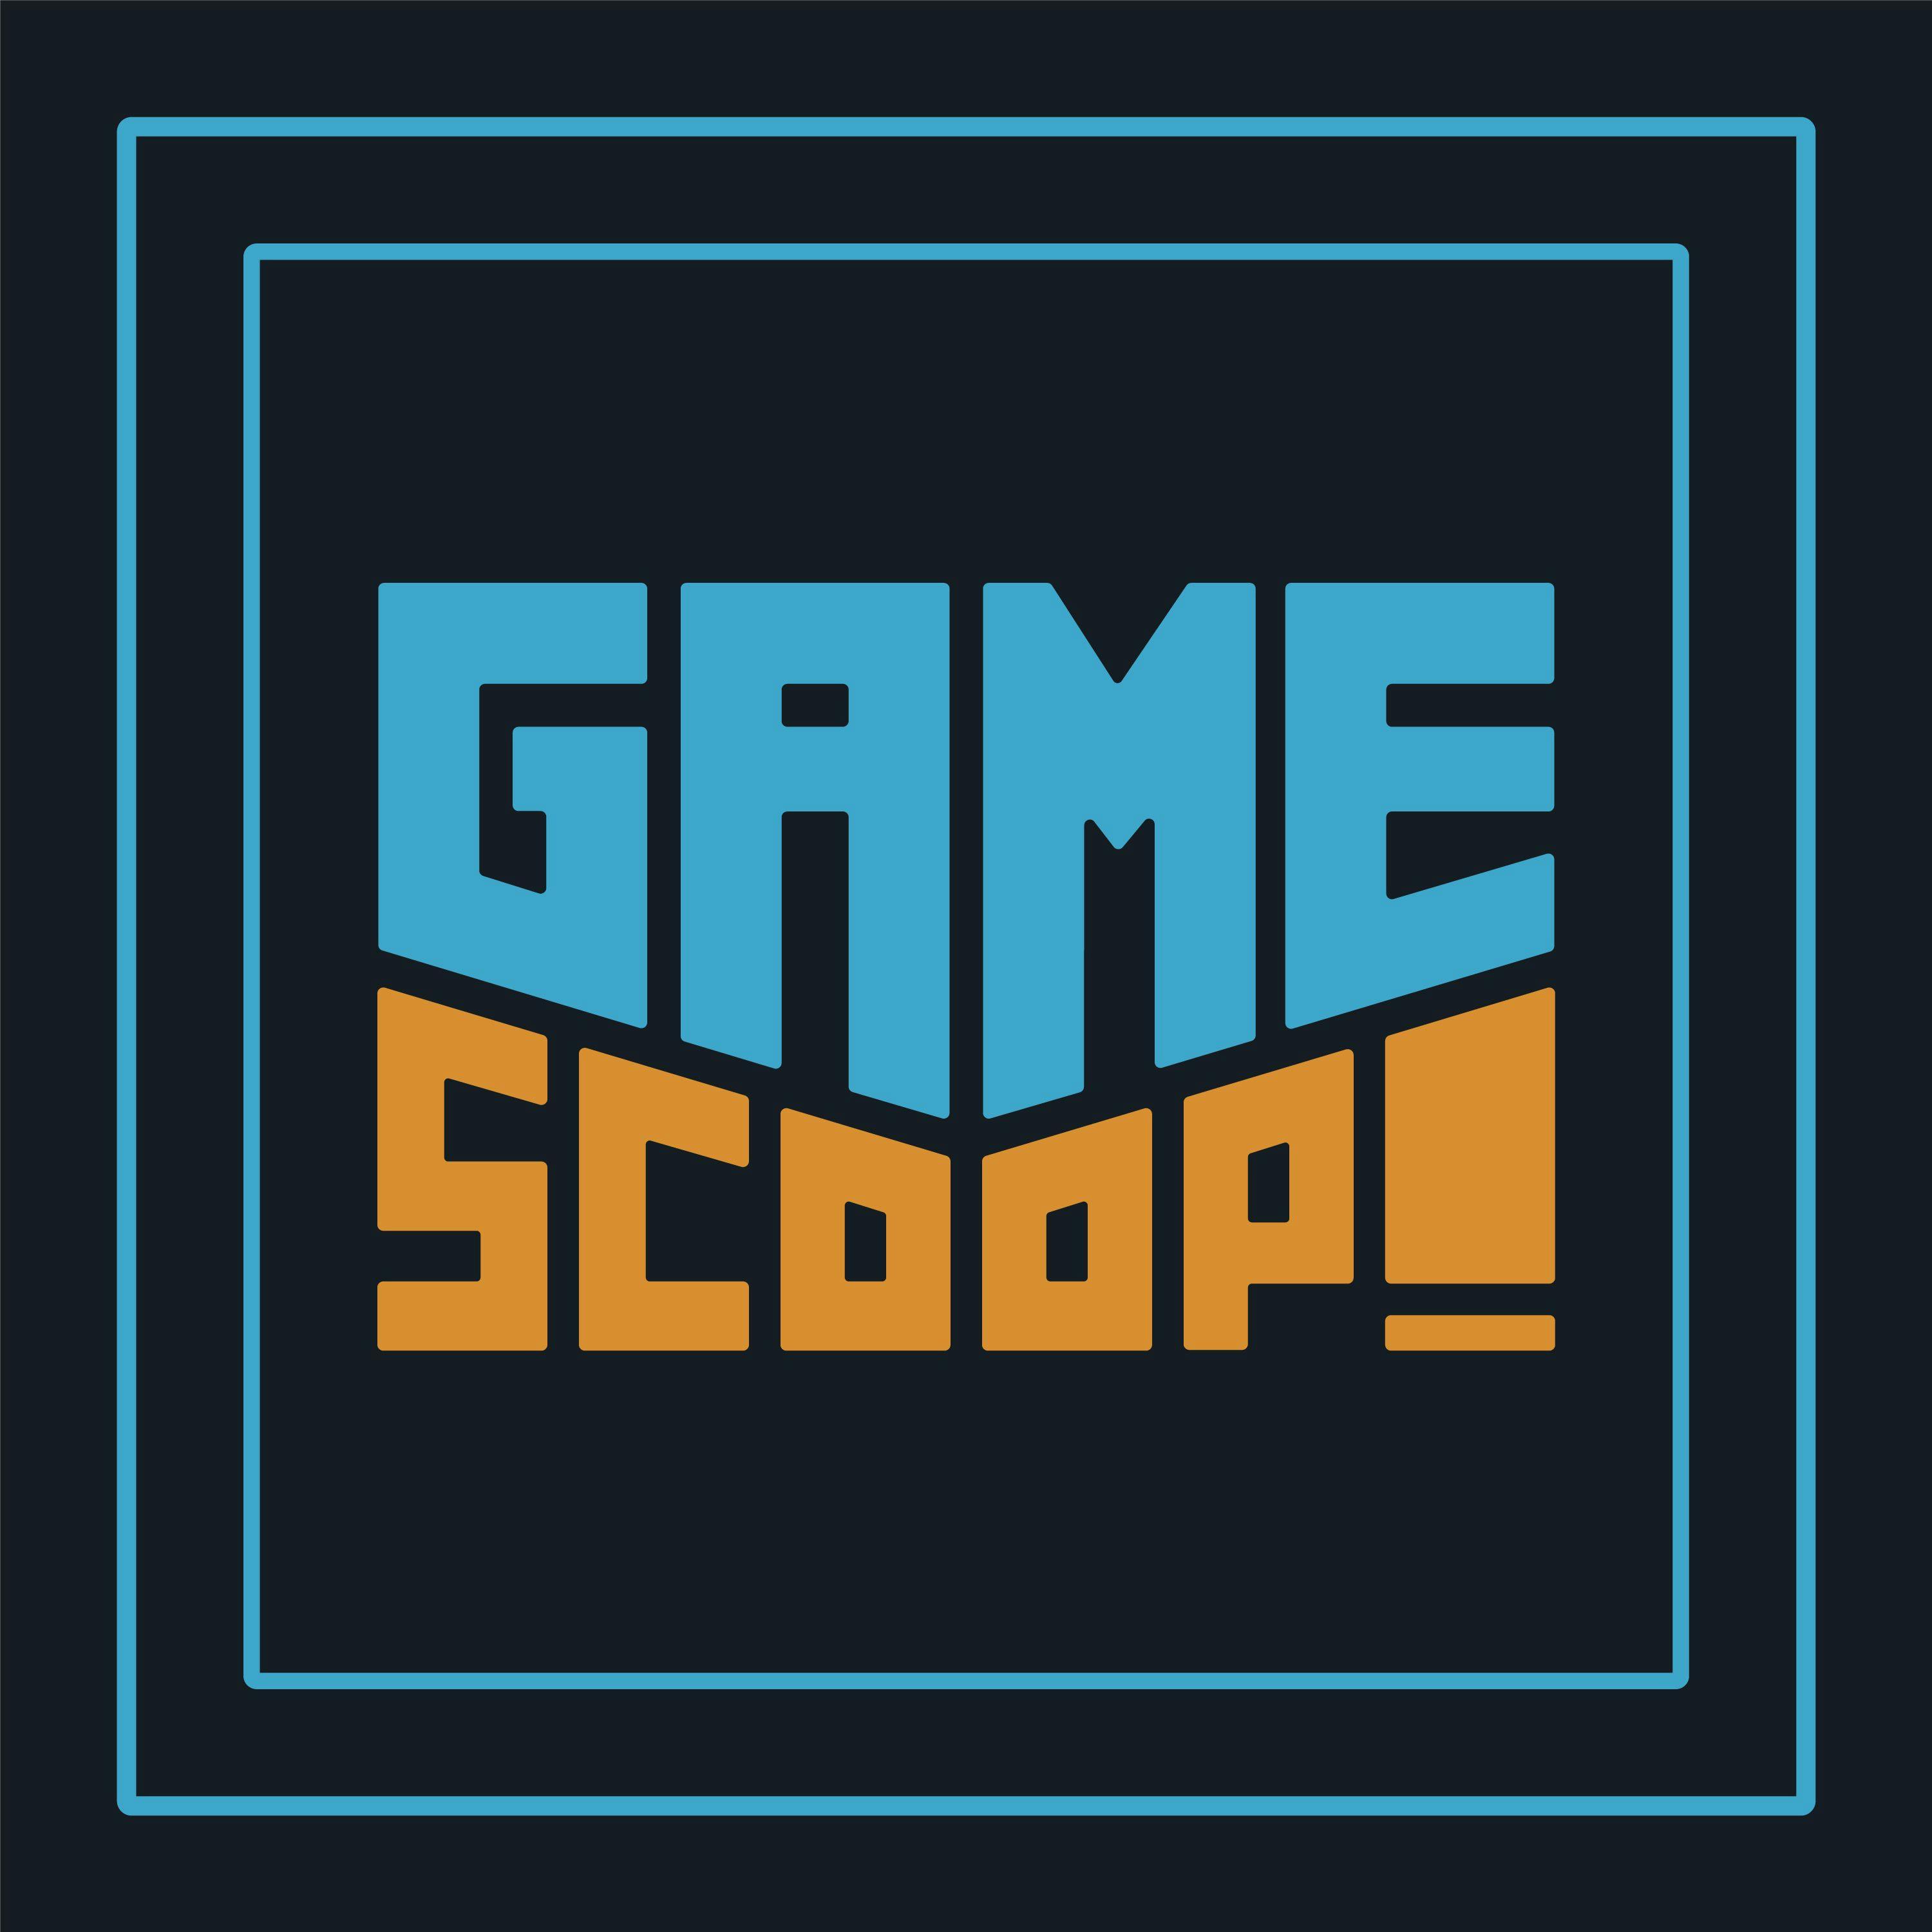 Game Scoop Episode 631